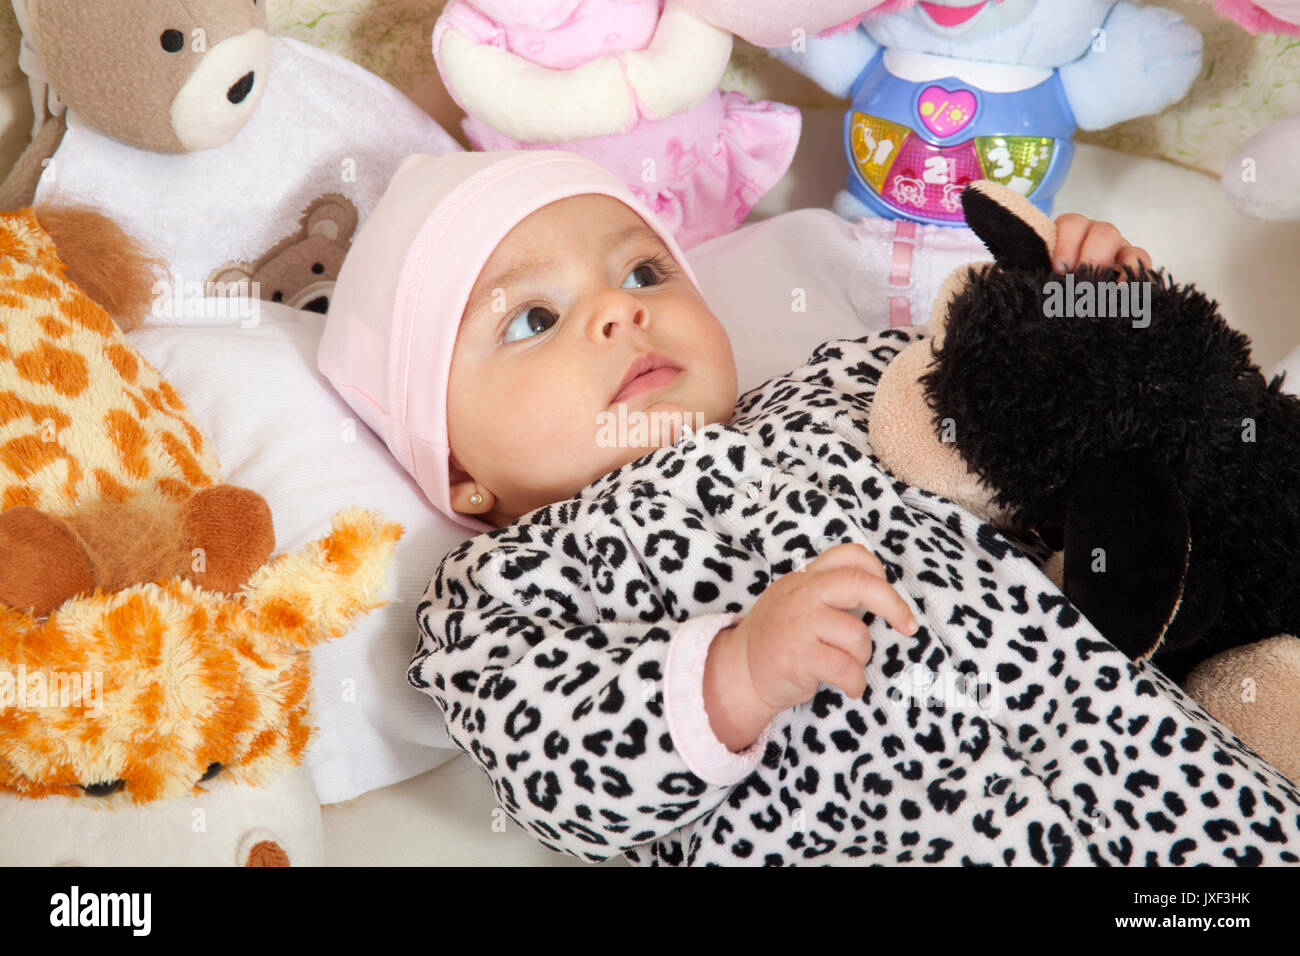 Una niña vestida de animal print rodeado por animales de peluche Foto de stock